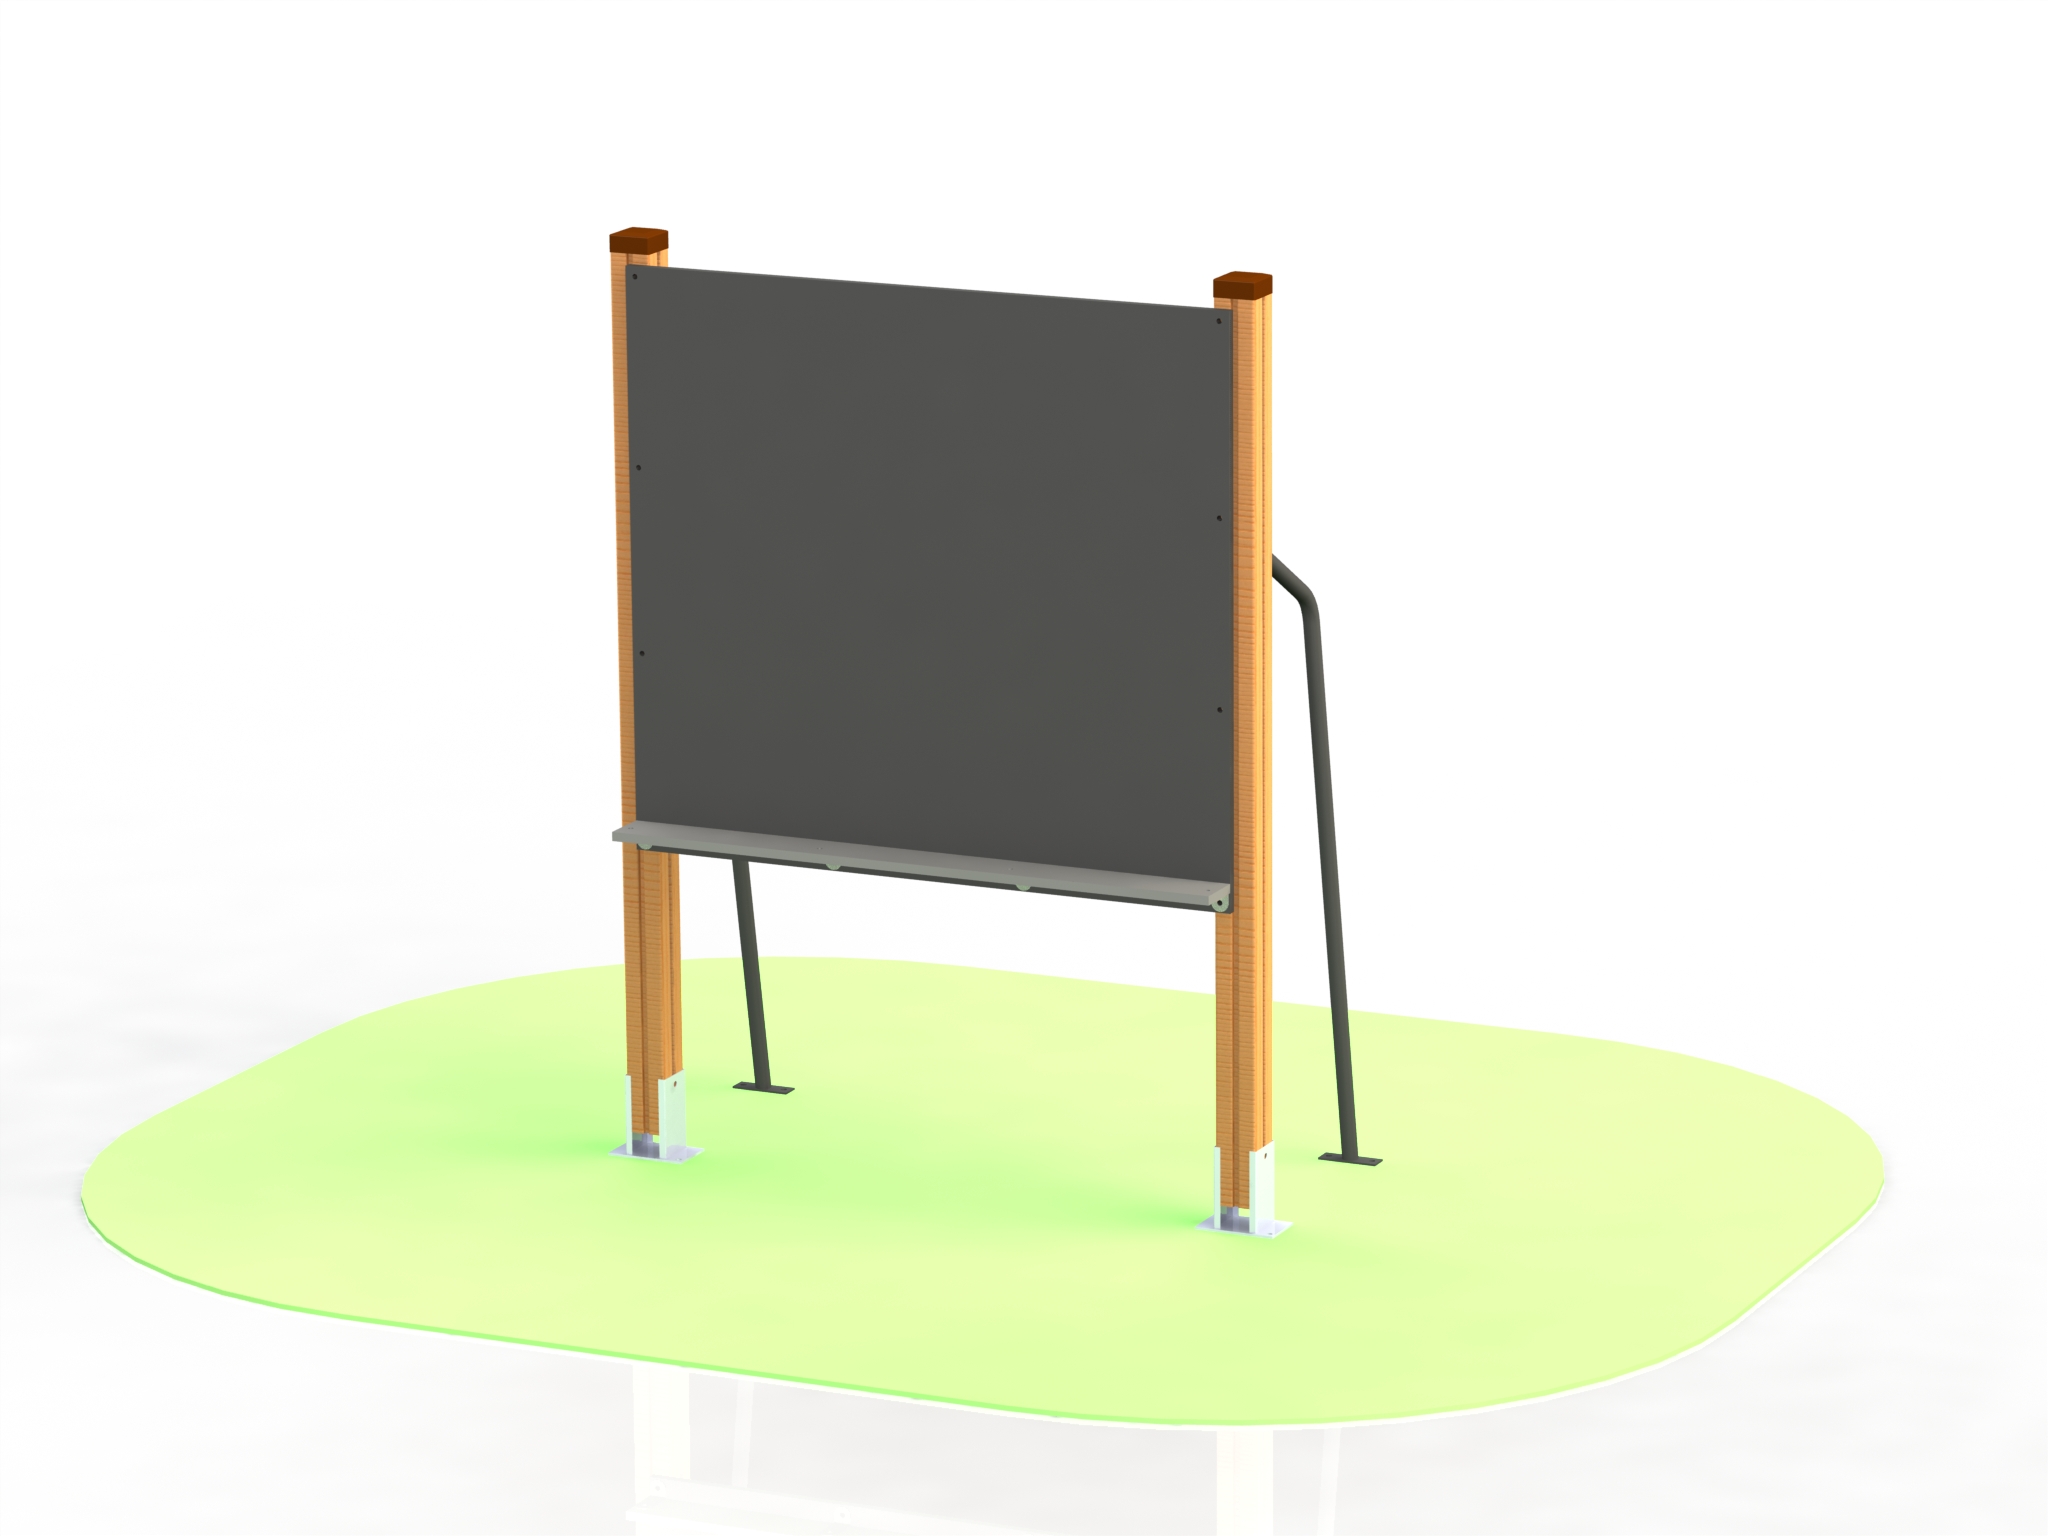 Blackboard model ИГ2-18 – For outdoor classroom